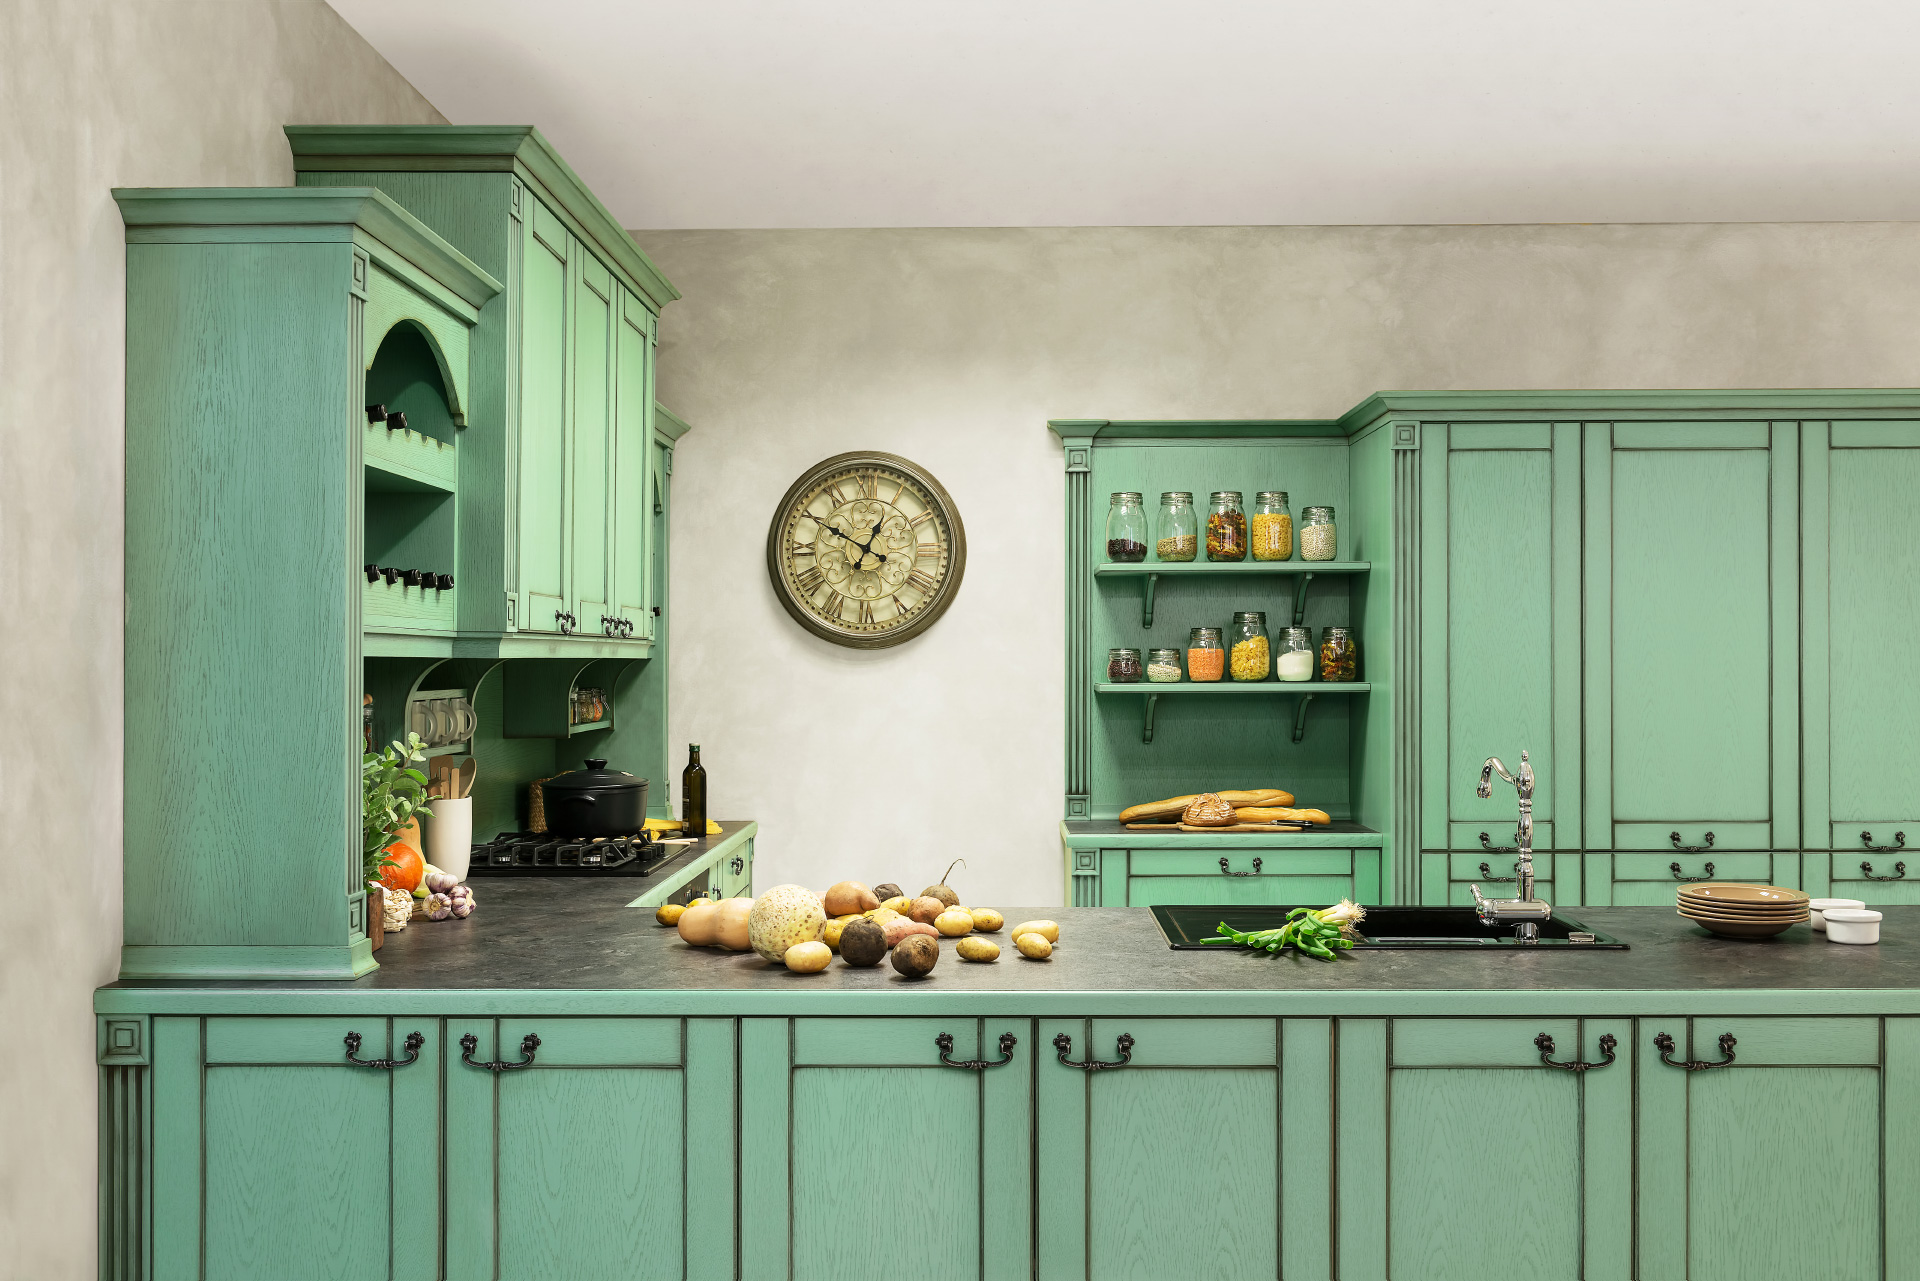 Provence styl bydlení je nadčasový. Kuchyně Avignon v zelené patině.